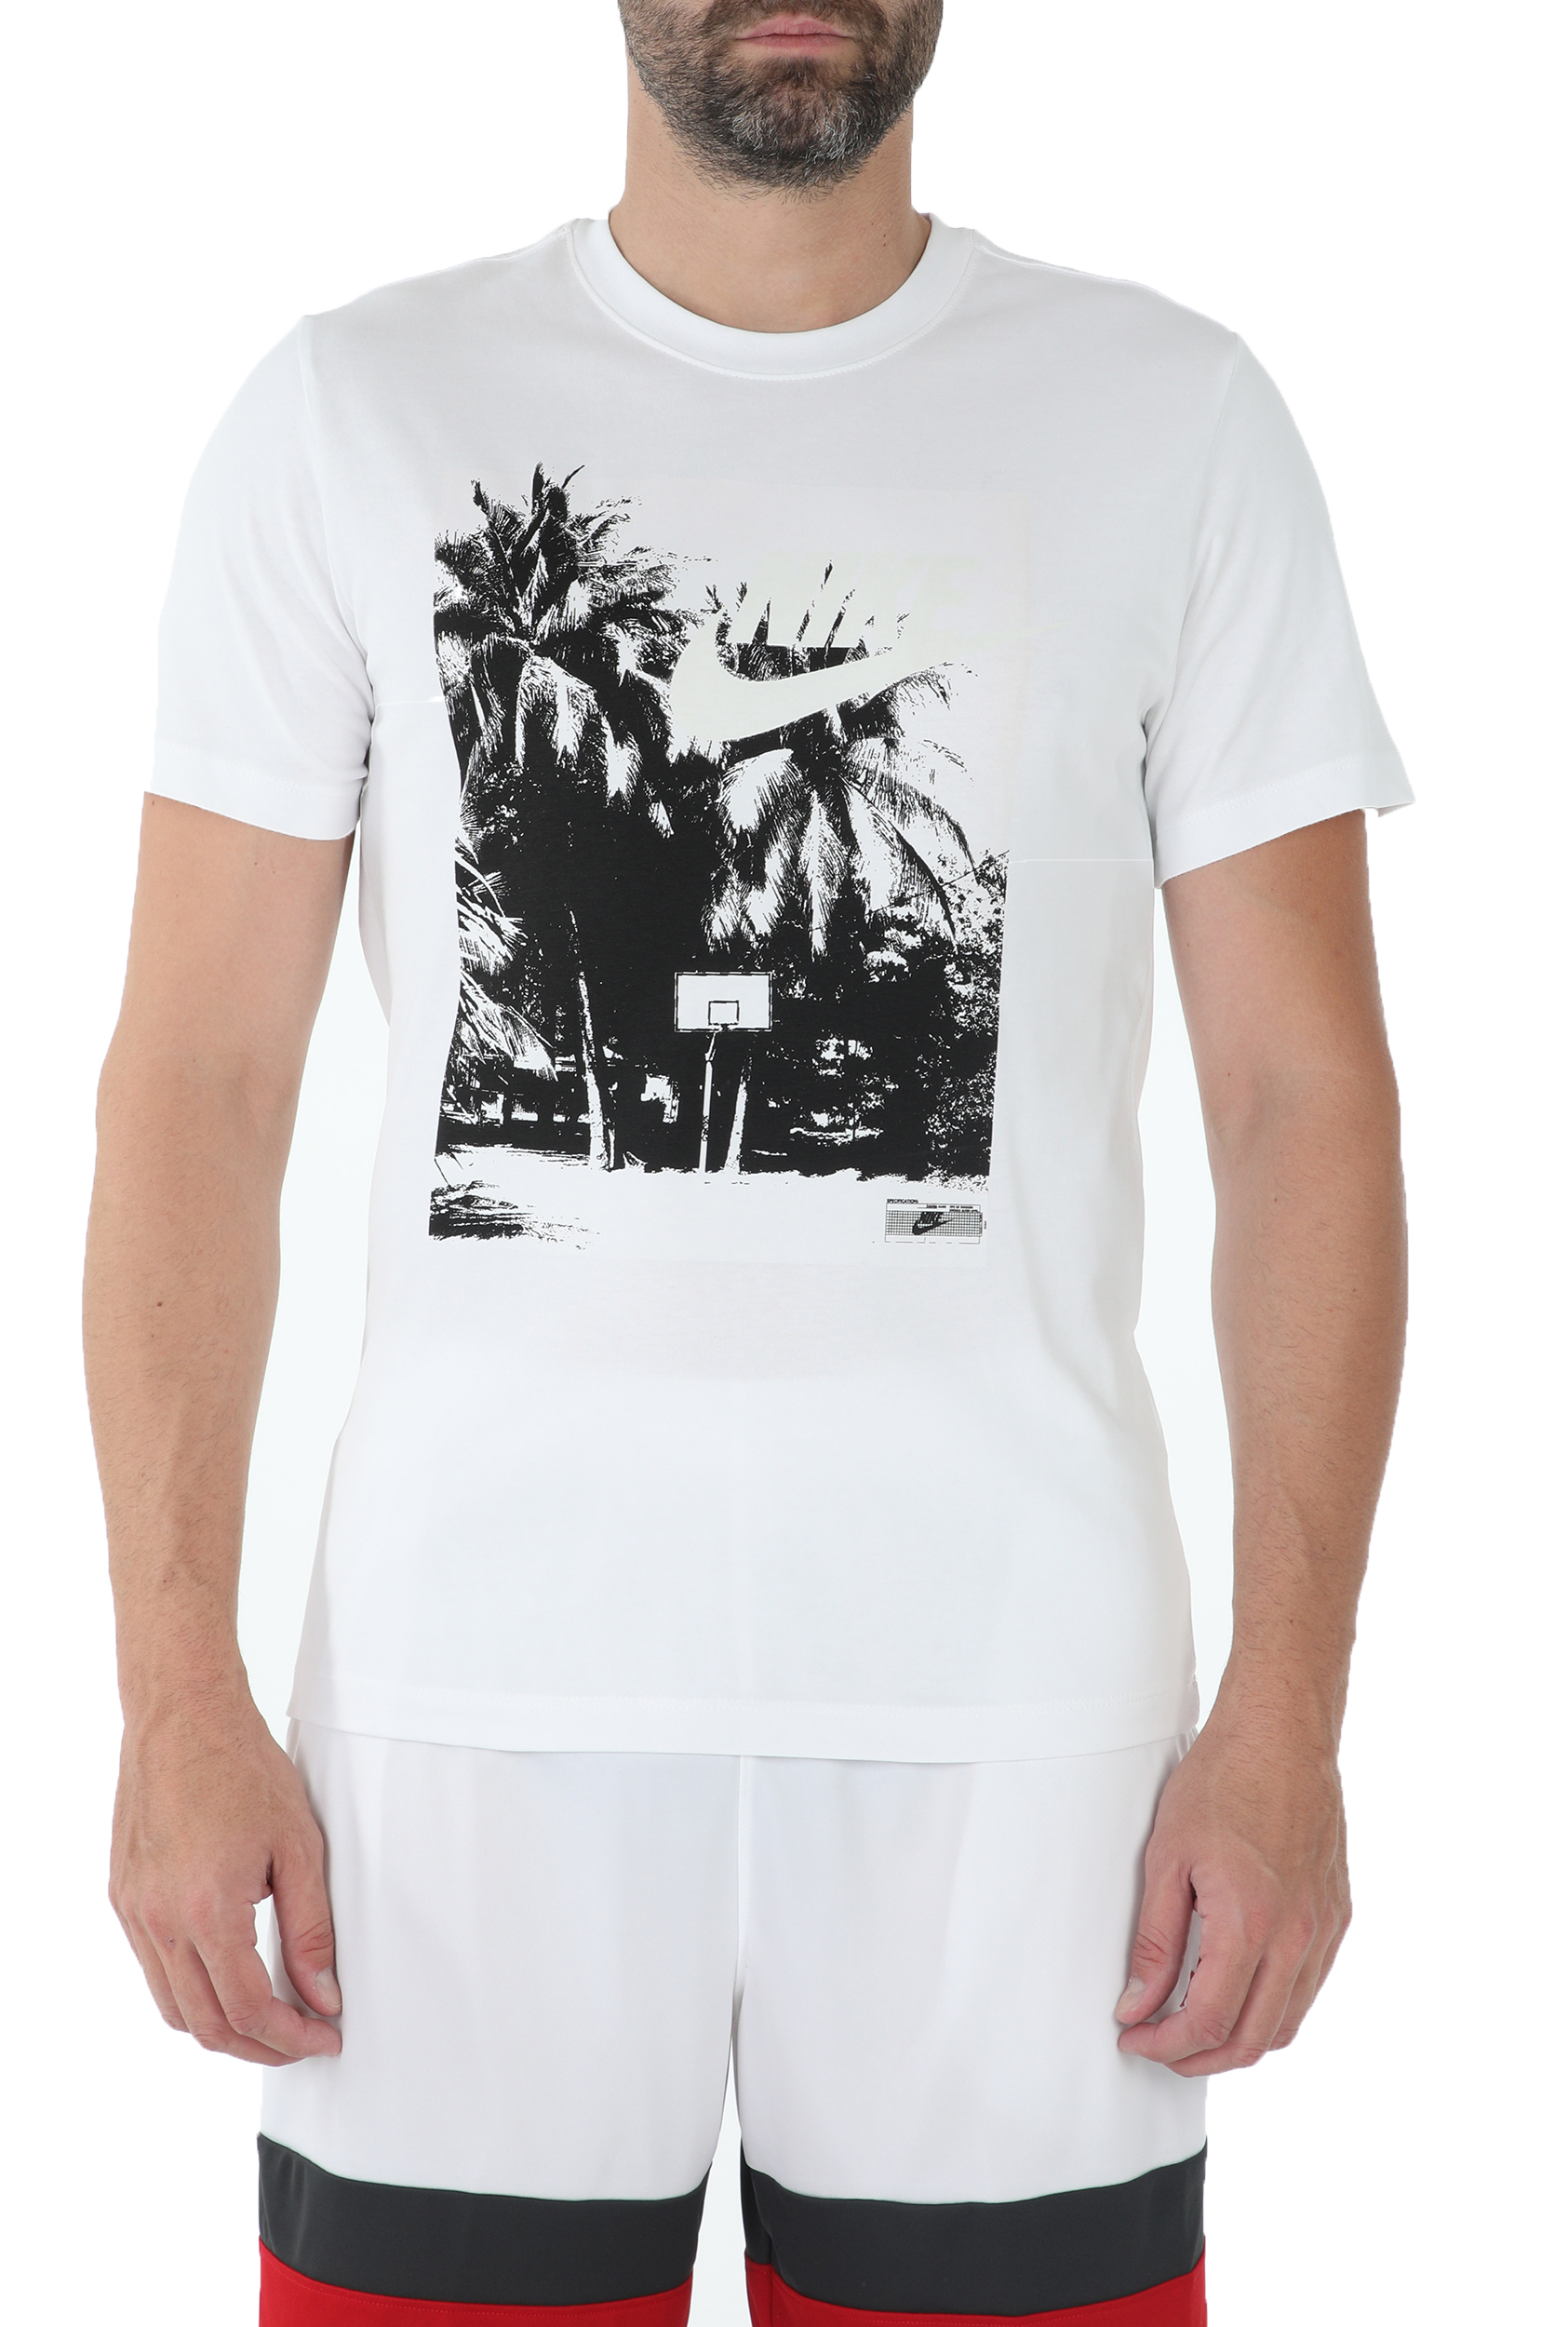 Ανδρικά/Ρούχα/Αθλητικά/T-shirt NIKE - Ανδρικό t-shirt NIKE BEACH UV λευκό